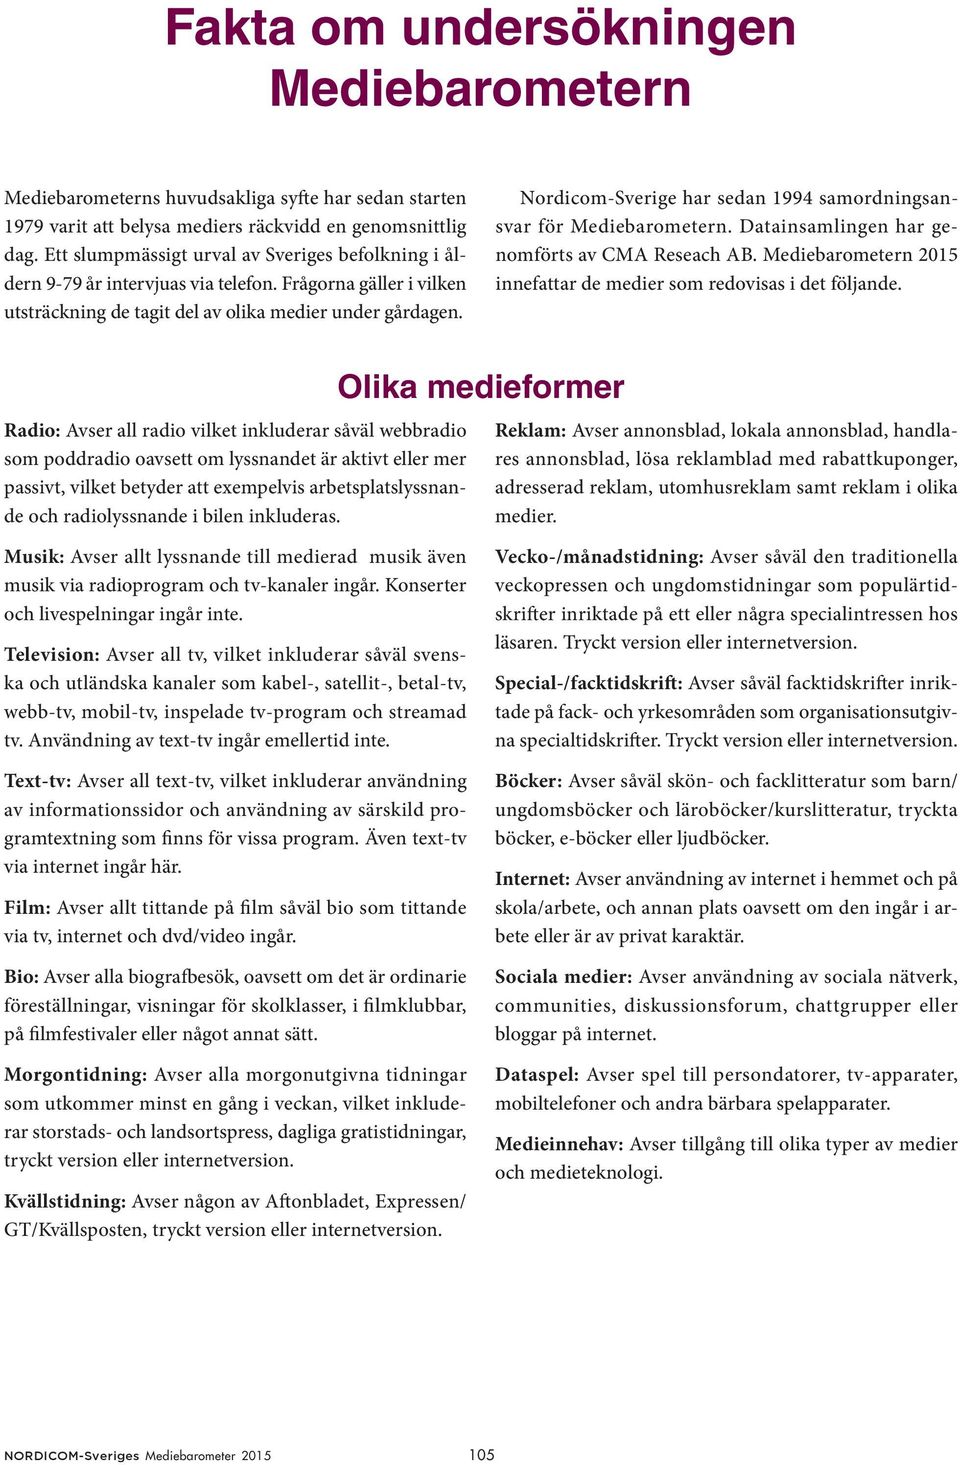 Nordicom-Sverige har sedan 1994 samordningsansvar för Mediebarometern. Datainsamlingen har genomförts av CMA Reseach AB. Mediebarometern 2015 innefattar de medier som redovisas i det följande.